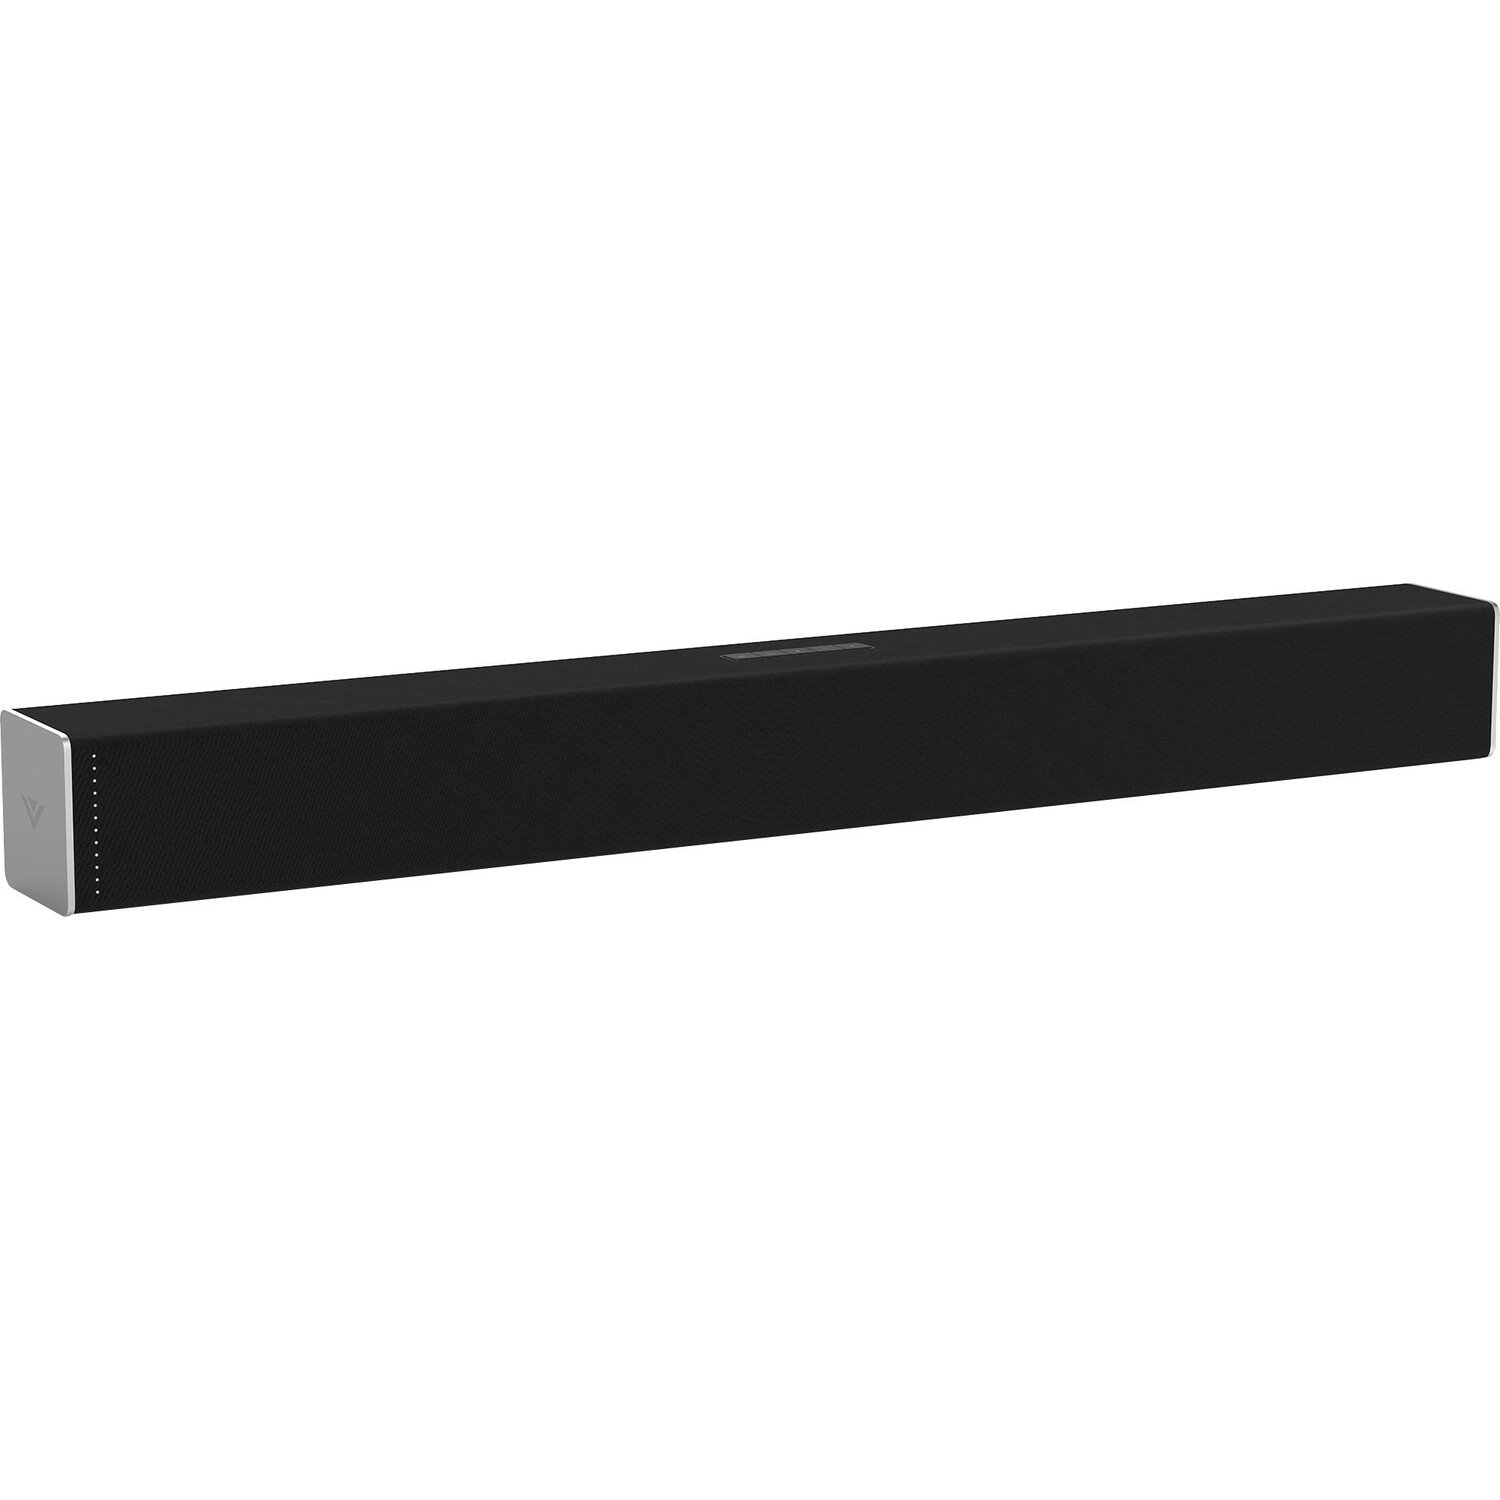 VIZIO 2.0 Bluetooth Sound Bar Speaker - Black